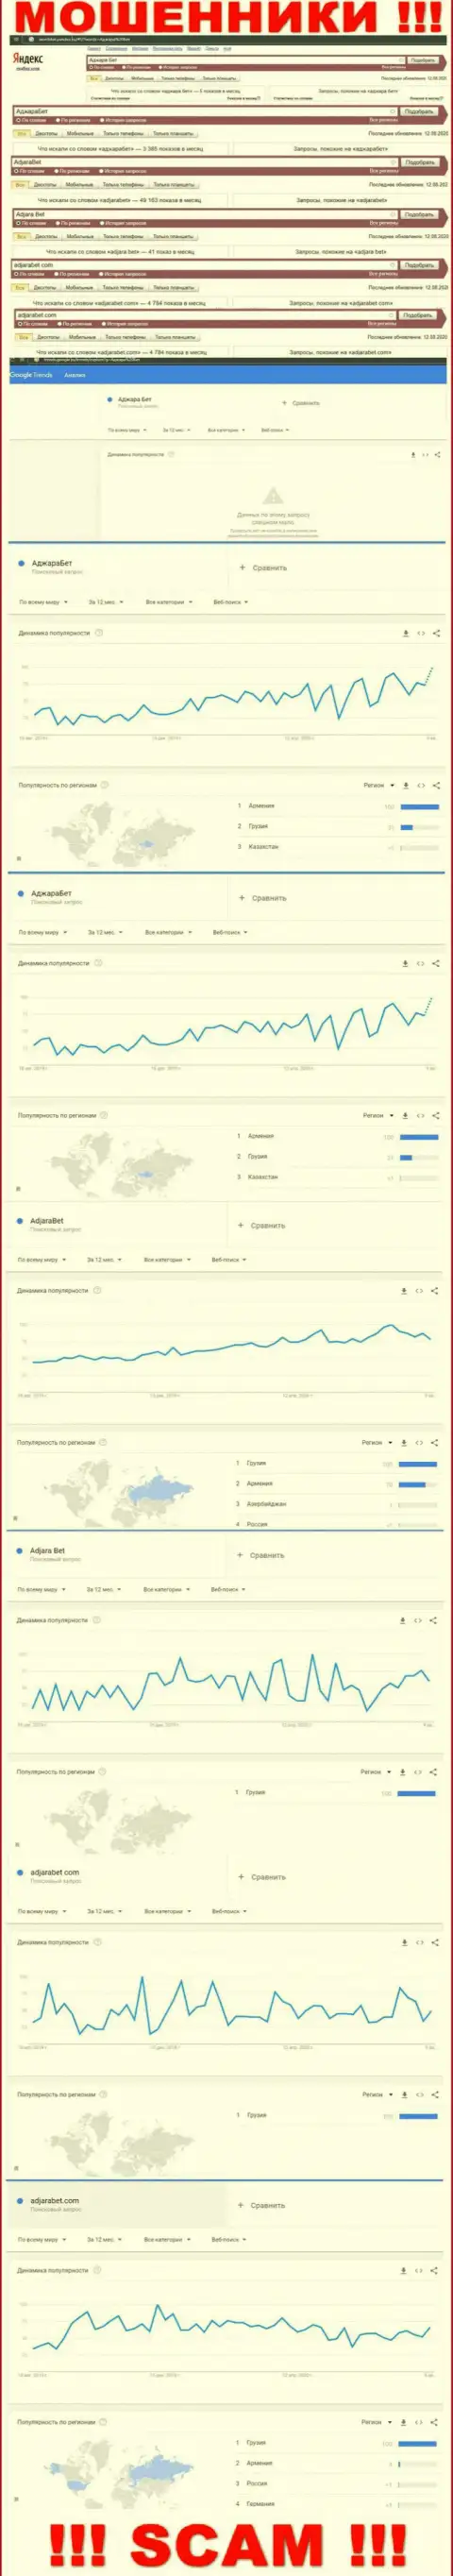 Статистические данные числа поисковых запросов в глобальной сети internet по мошенникам АджараБет